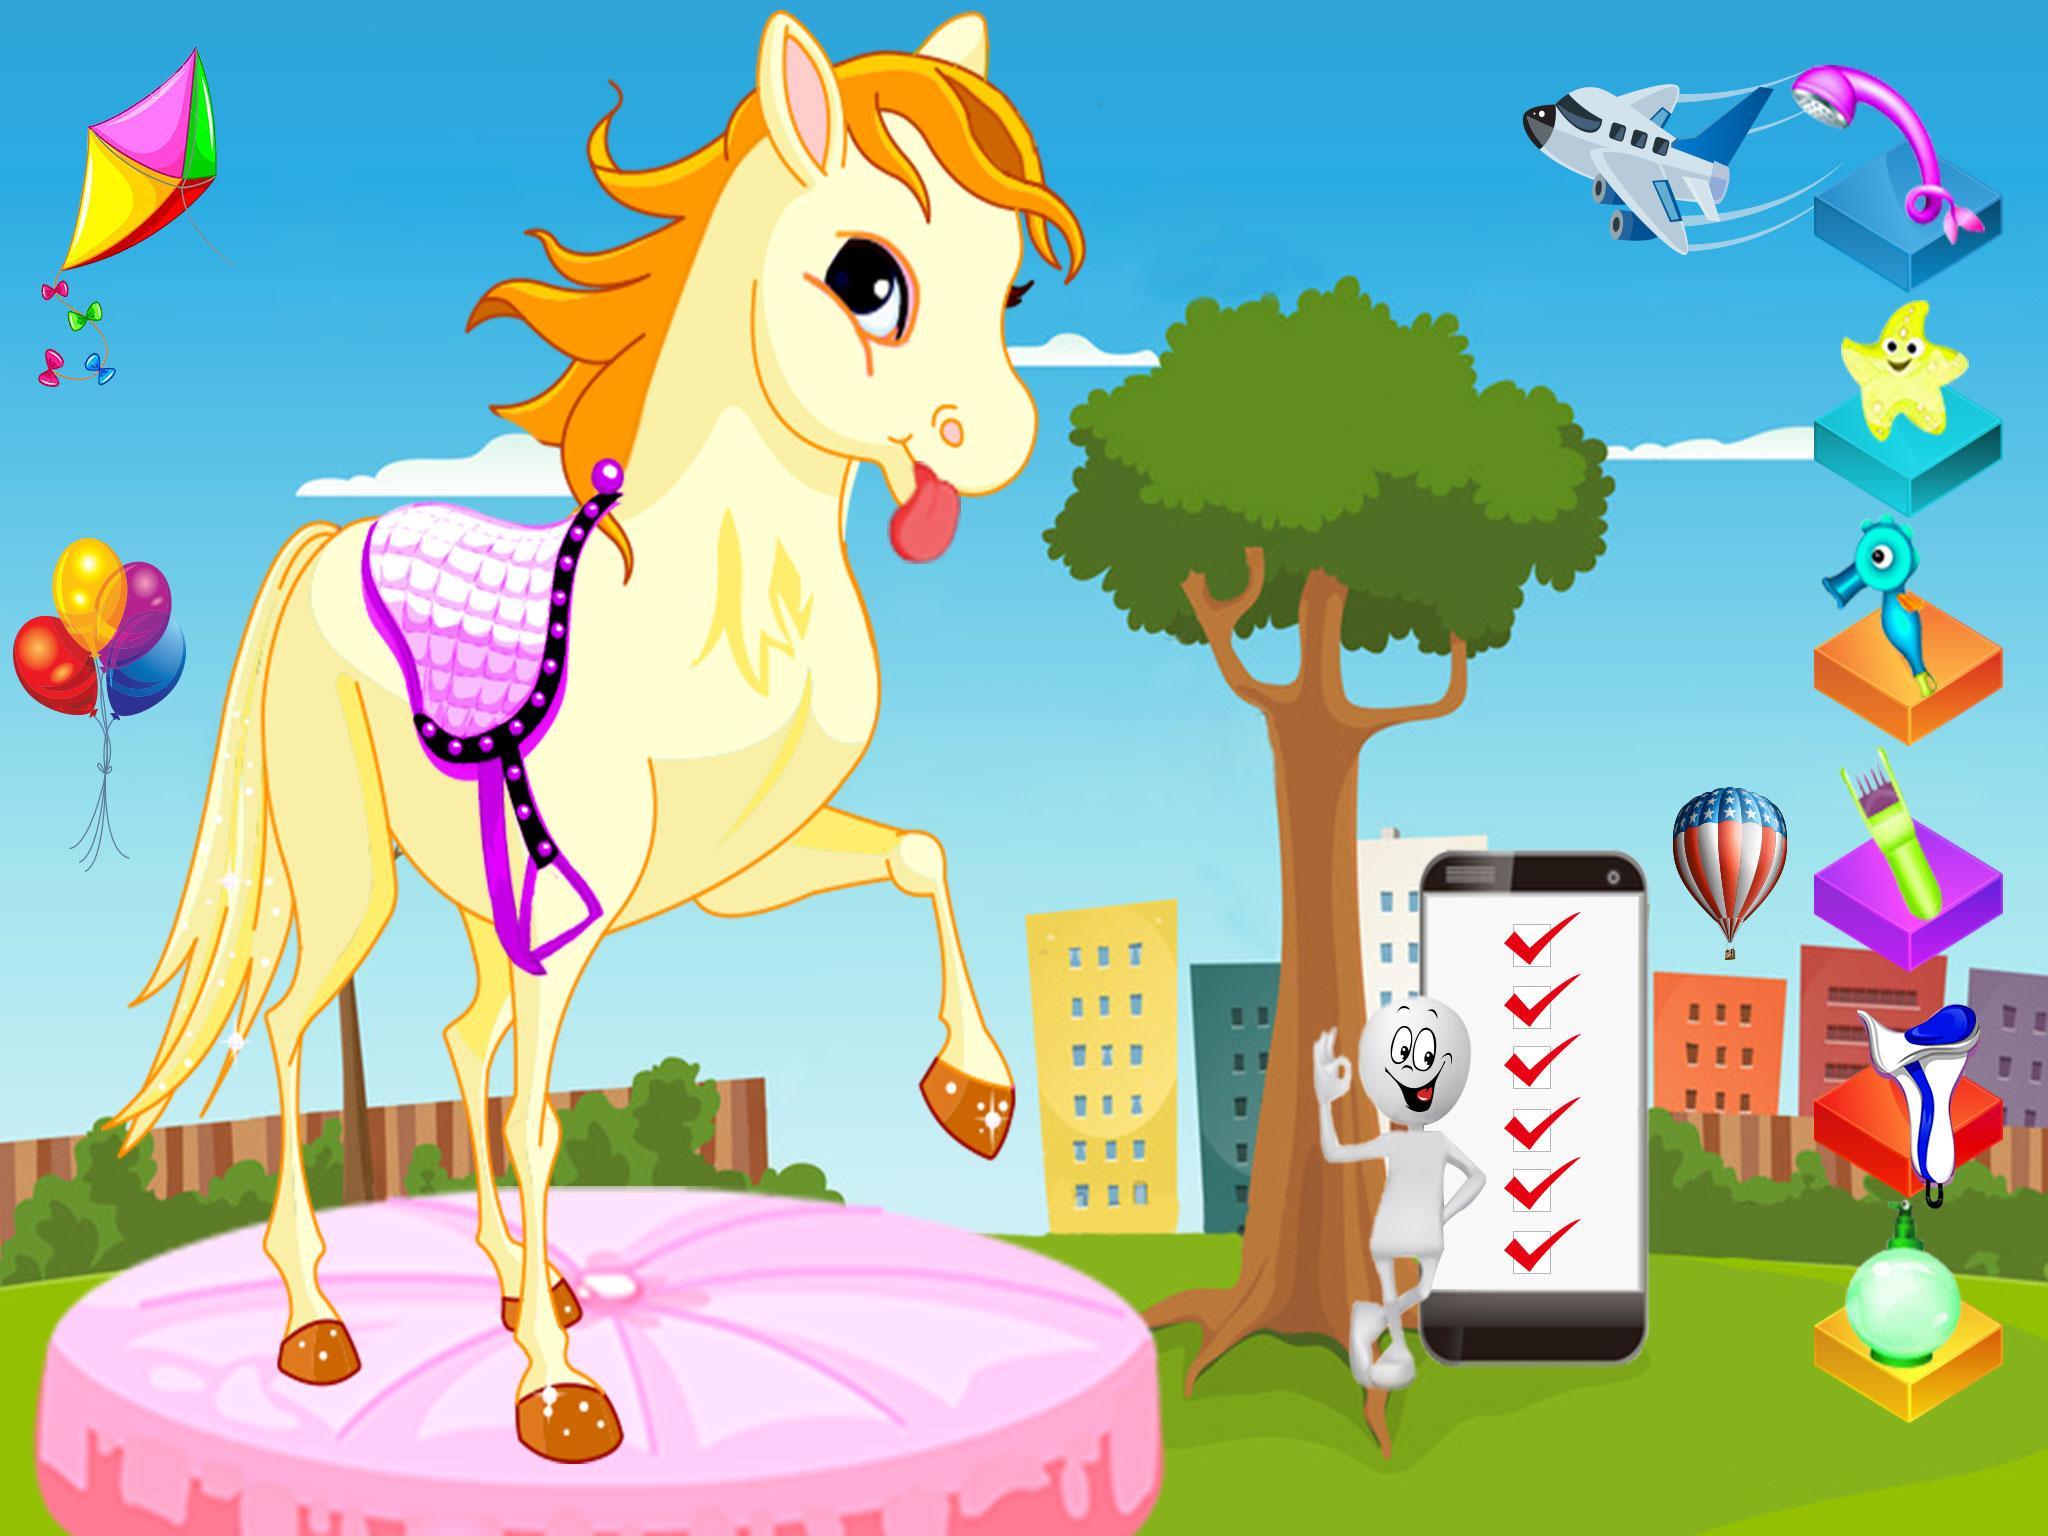 Pony pets. My little Pony Adventures игра. My little Pony Virtual Pet. My little Pony jumping. Adventure Ponies 2 game.